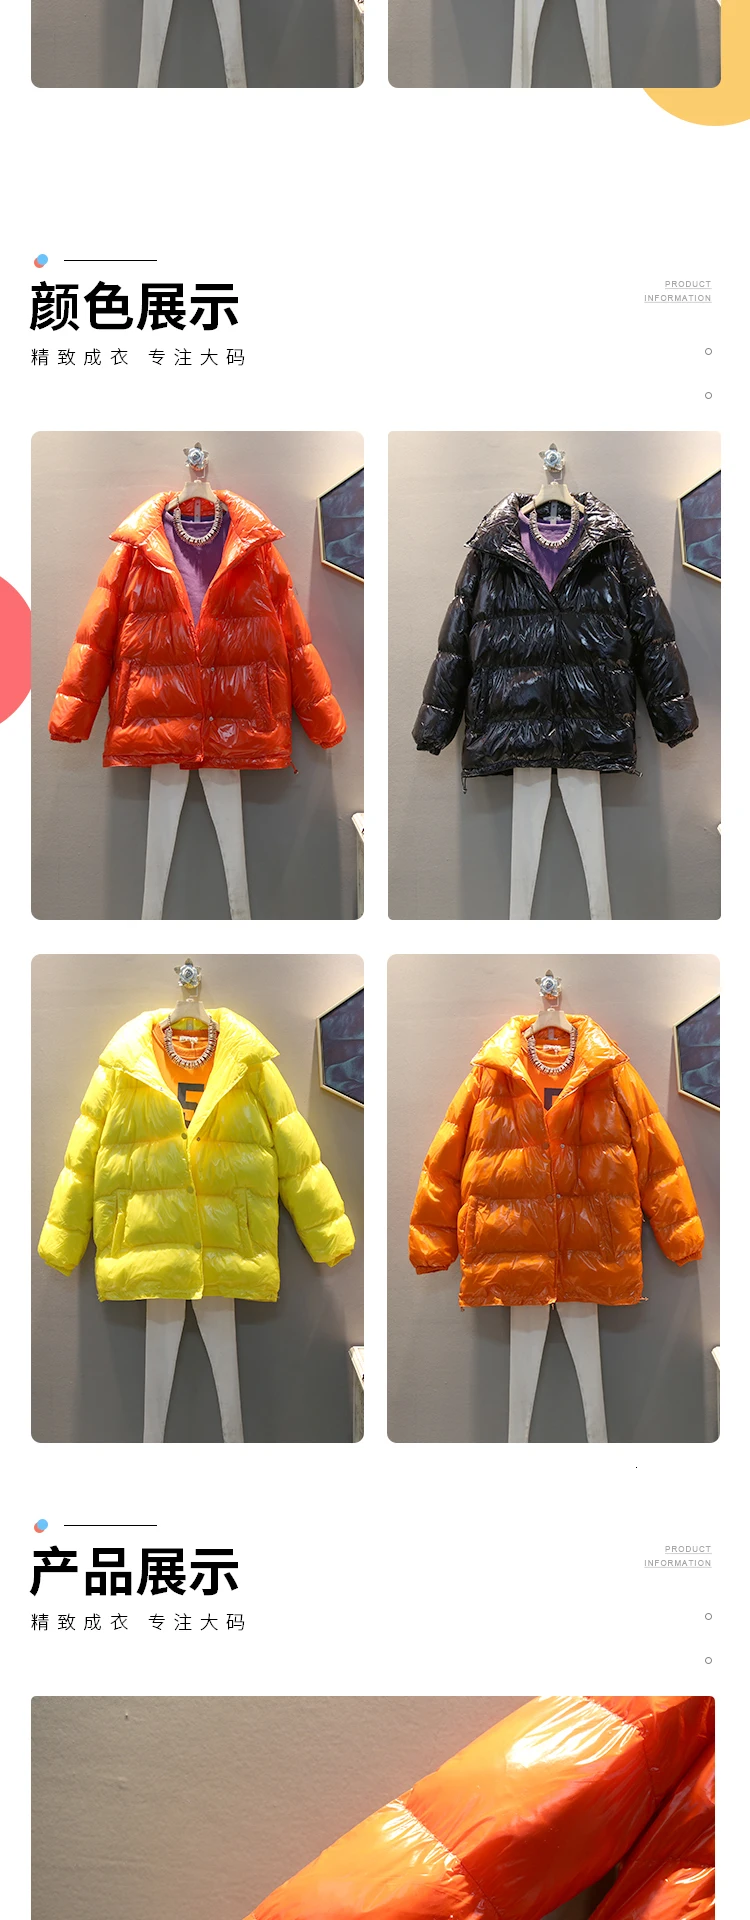 Цин МО размера плюс женские зимние парки женское глянцевое пальто толстое теплое пальто с хлопковой подкладкой черное оранжевое Красное Желтое ZQY2101